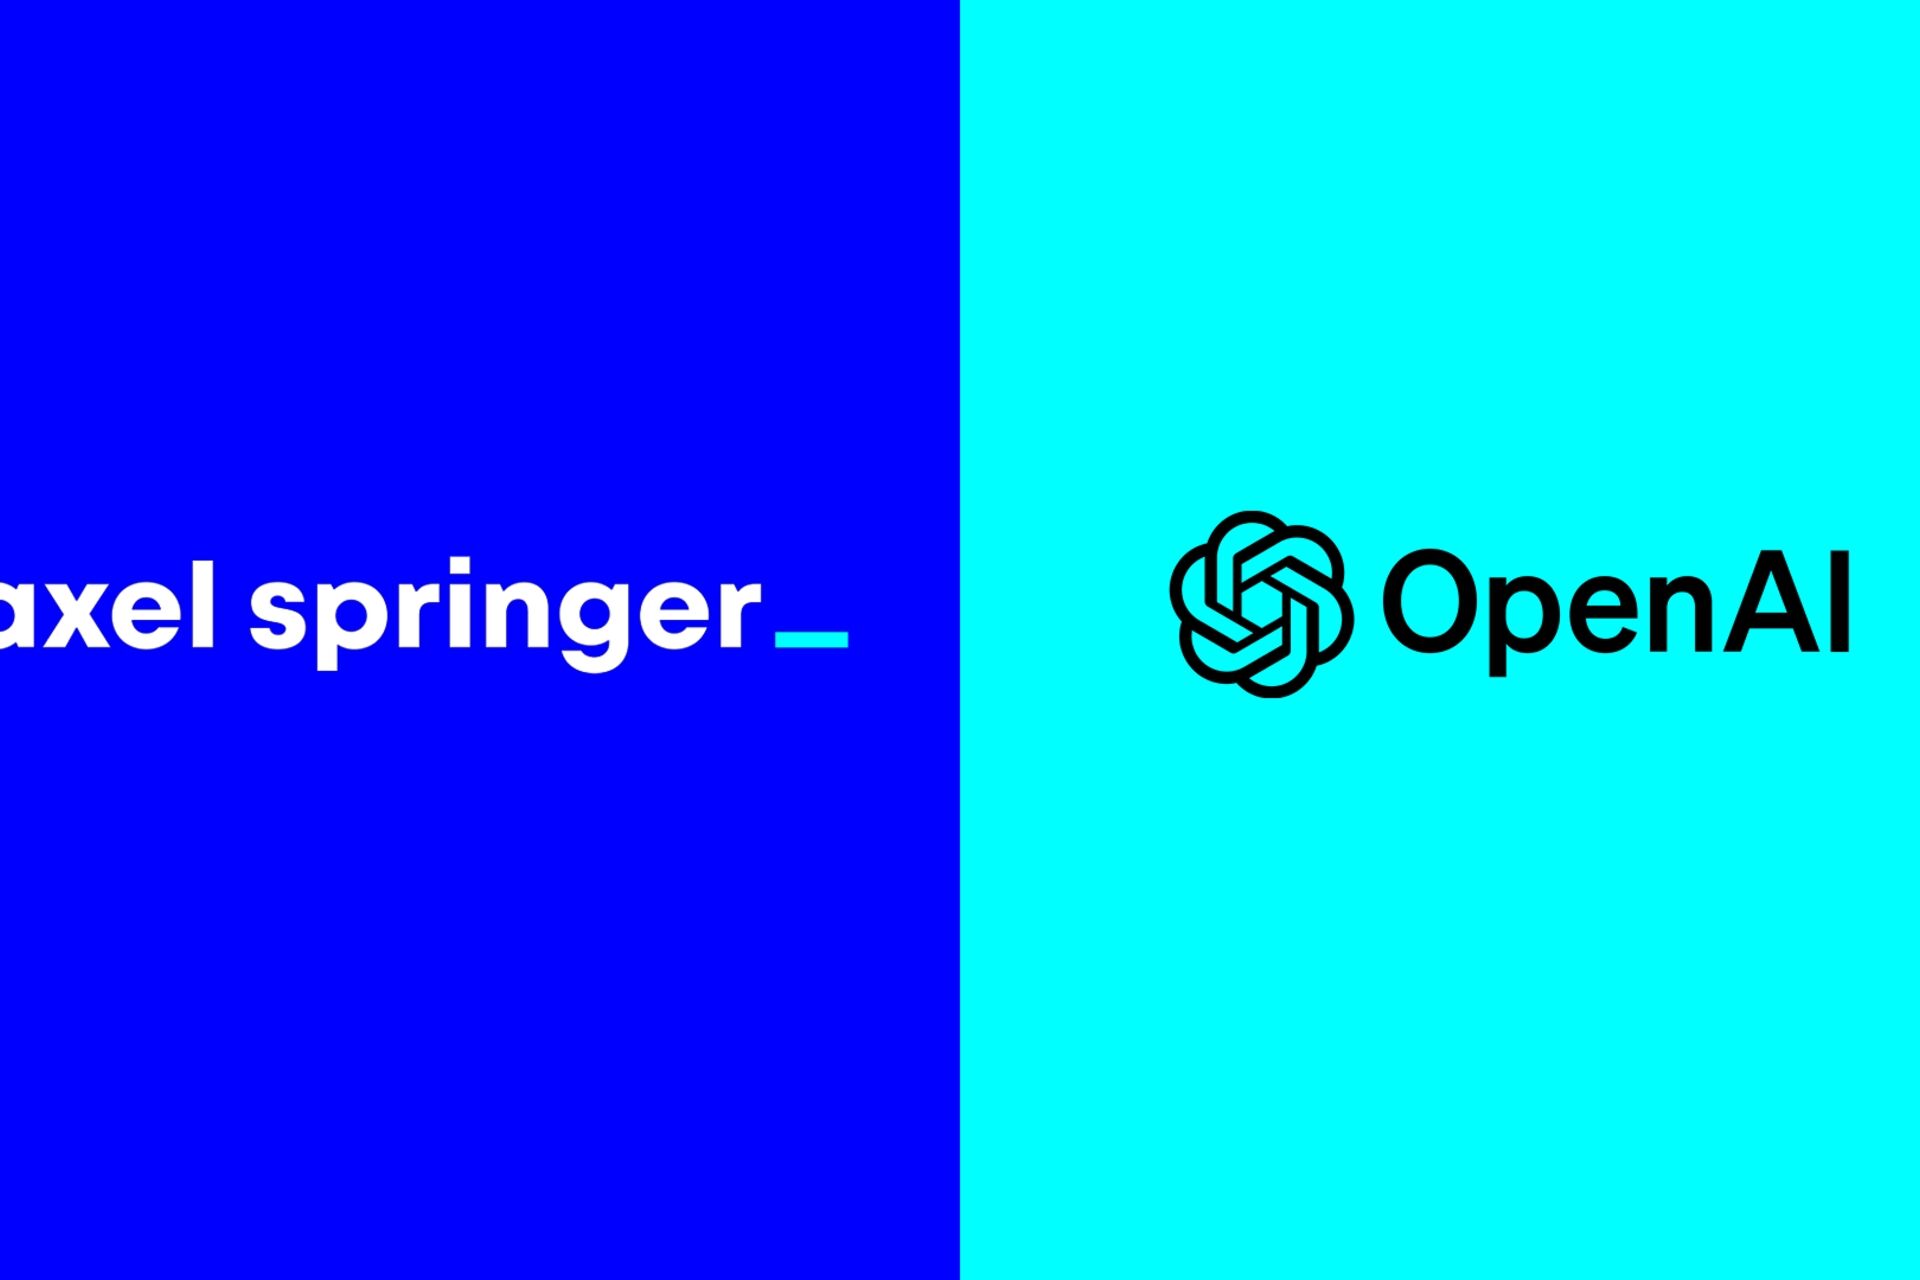 Giornalismo: Axel Springer e OpenAI hanno annunciato una partnership globale per rafforzare il giornalismo indipendente nell'era dell'intelligenza artificiale